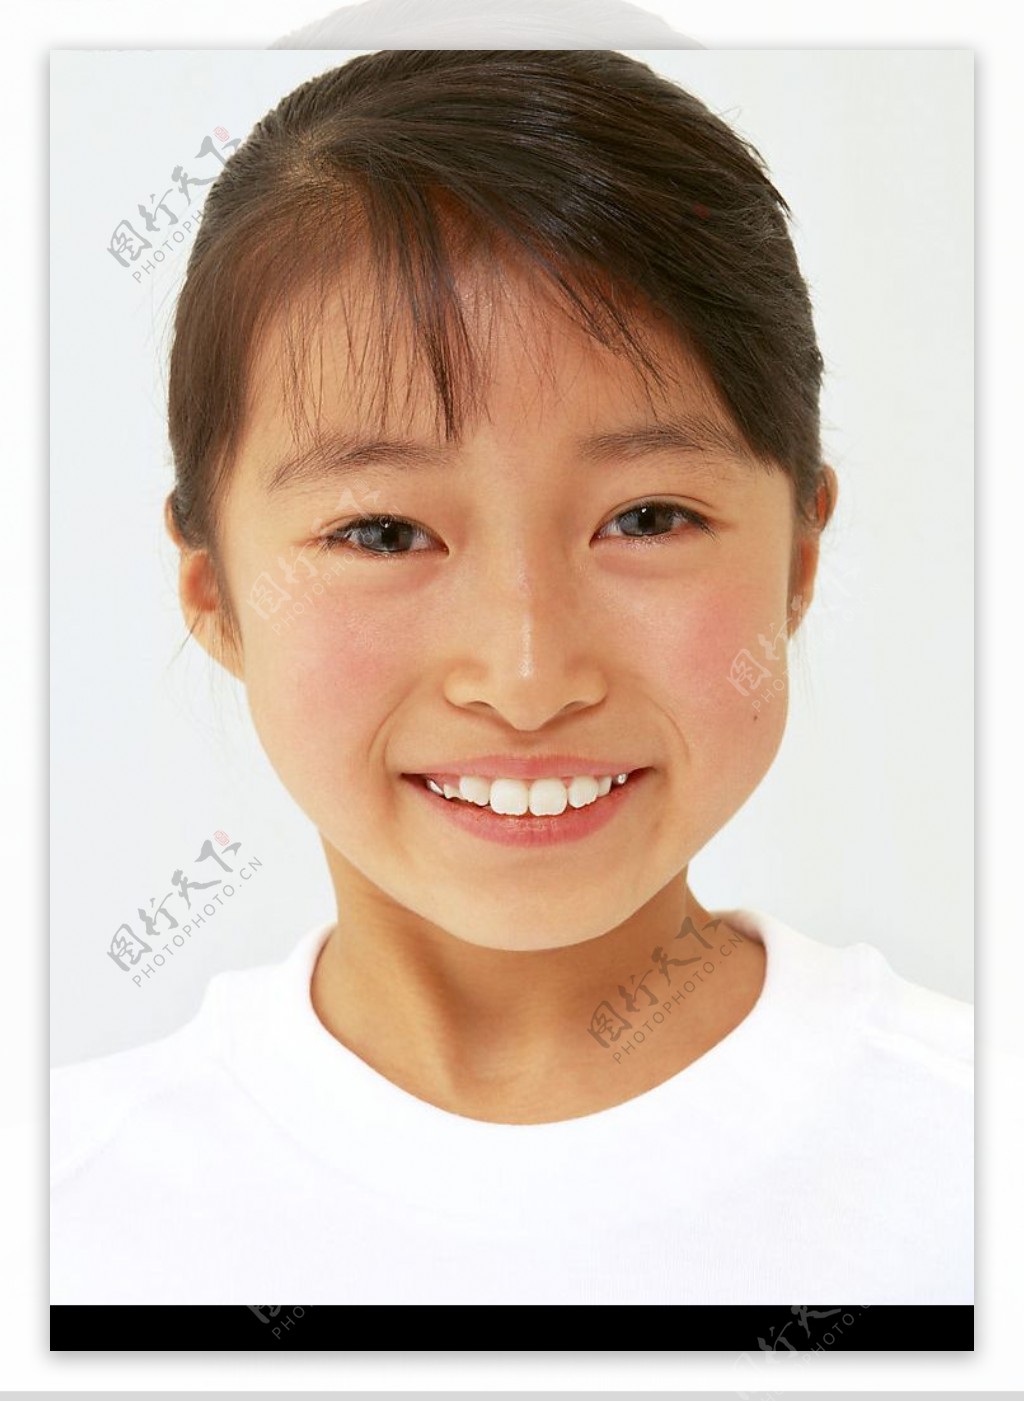 棕发女孩微笑 美丽的眼睛 7K美女图片壁纸(美女静态壁纸) - 静态壁纸下载 - 元气壁纸